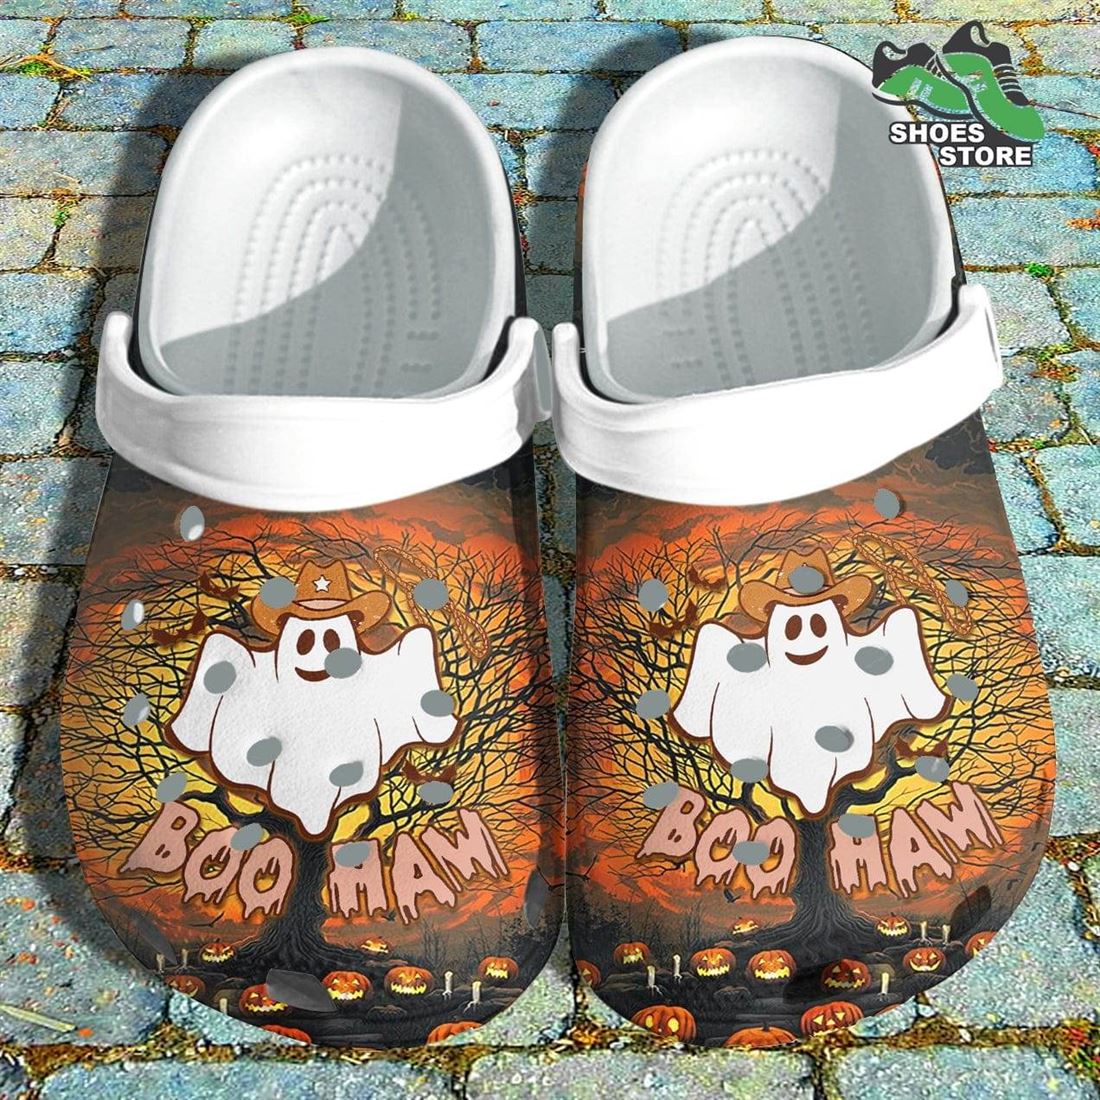 Boo Haw Crocs Shoes Spooky Ghost Cowboy Crocs